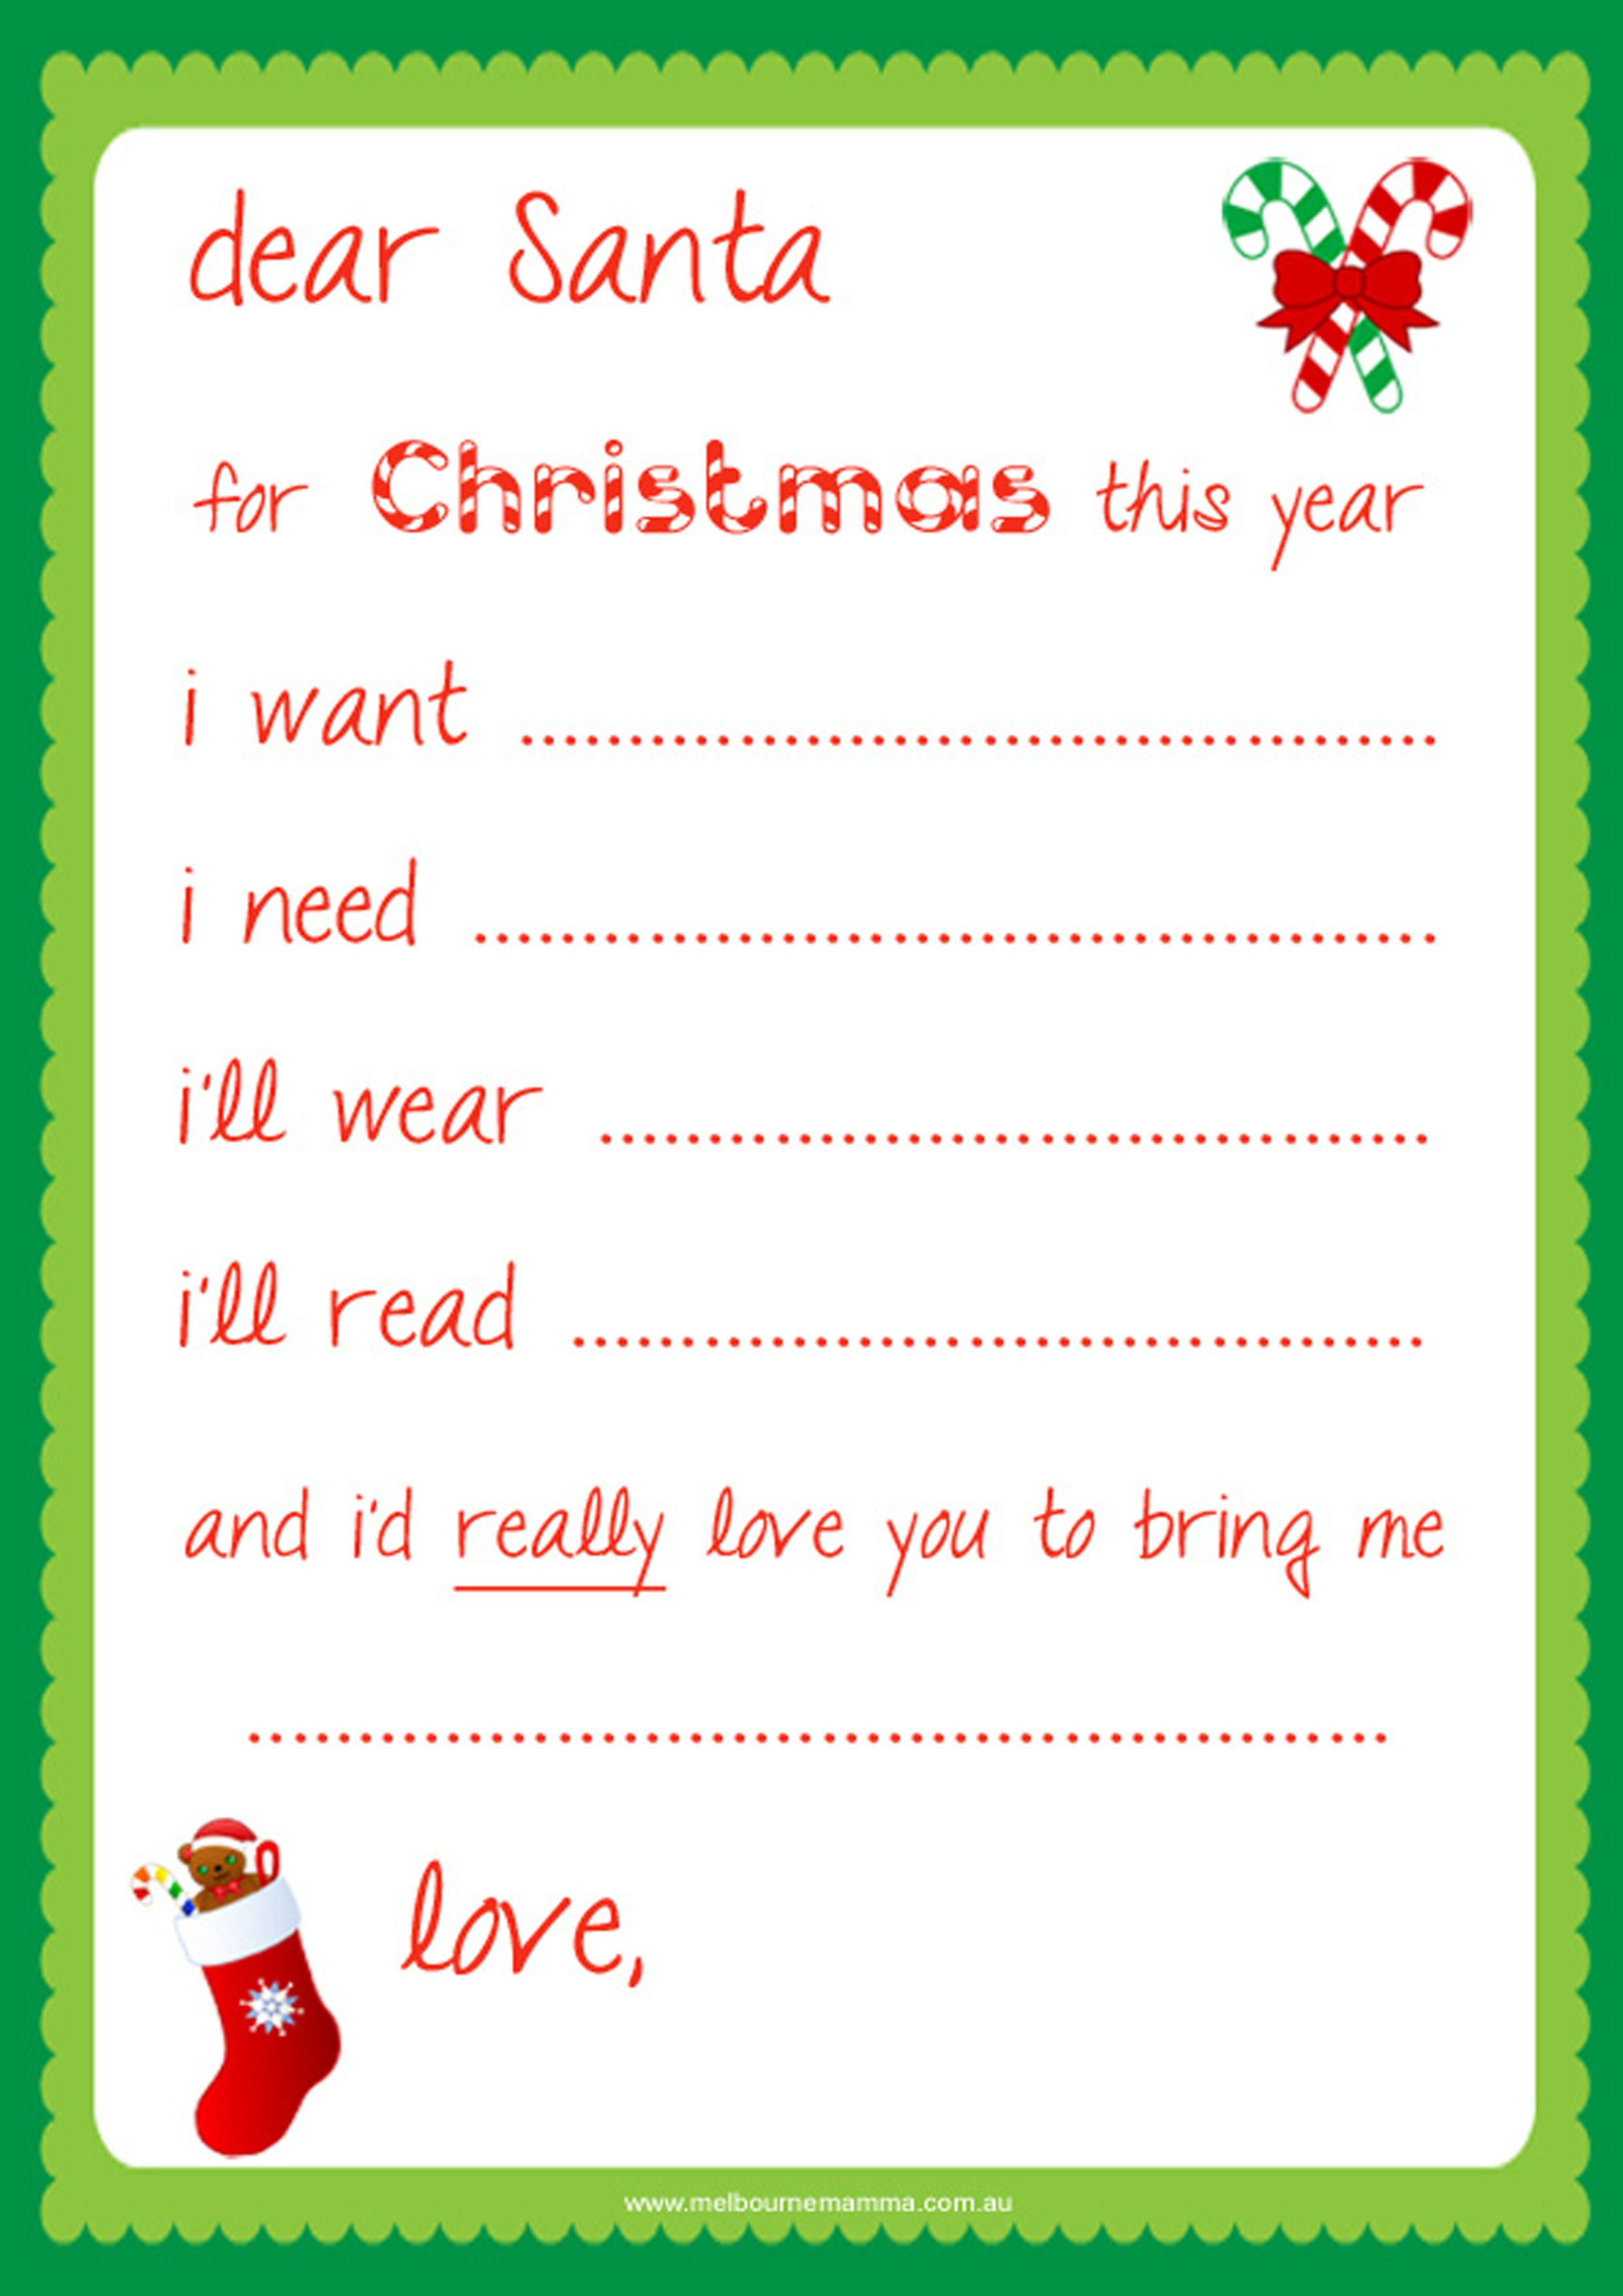 Dear Santa Letter Template Free - Dear Santa Letter Template